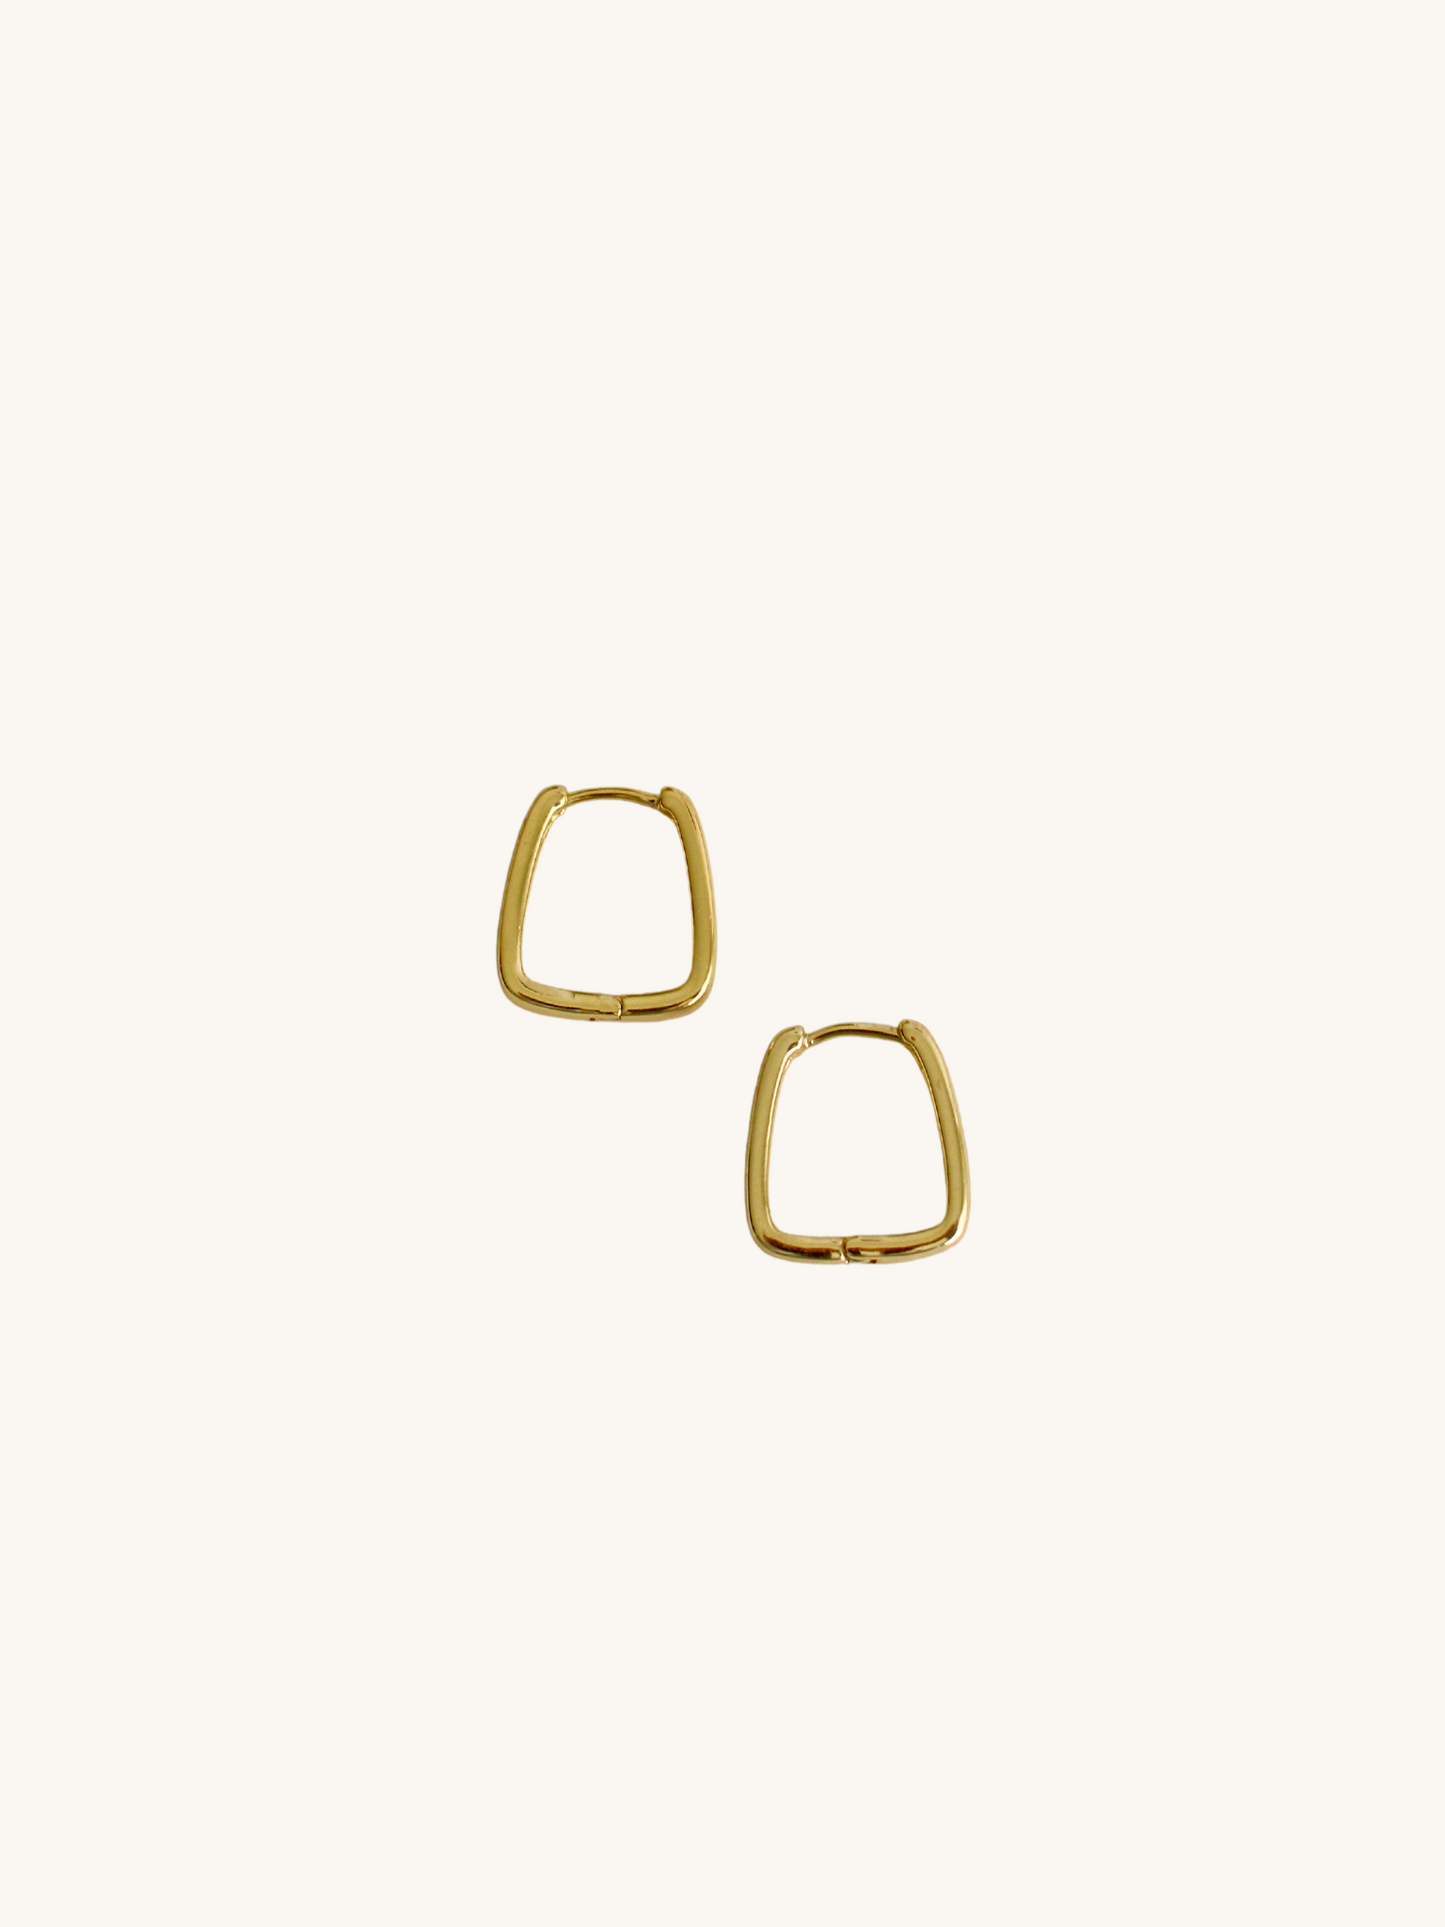 Square hoop earrings